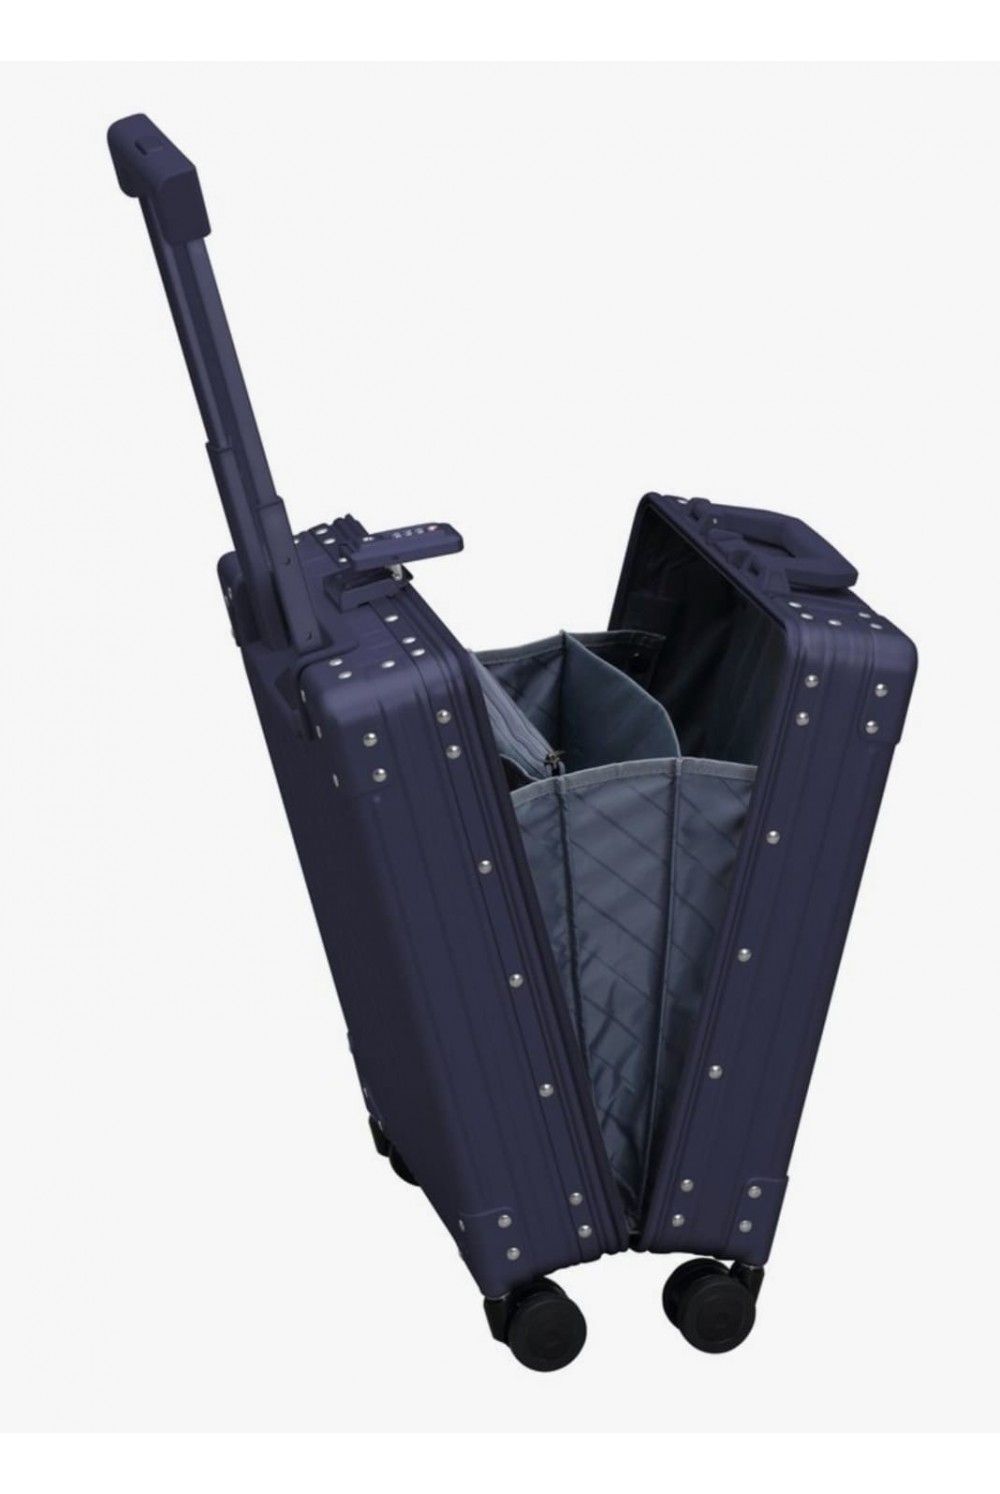 Handbag Alu Case Aleon 49cm 4 wheel